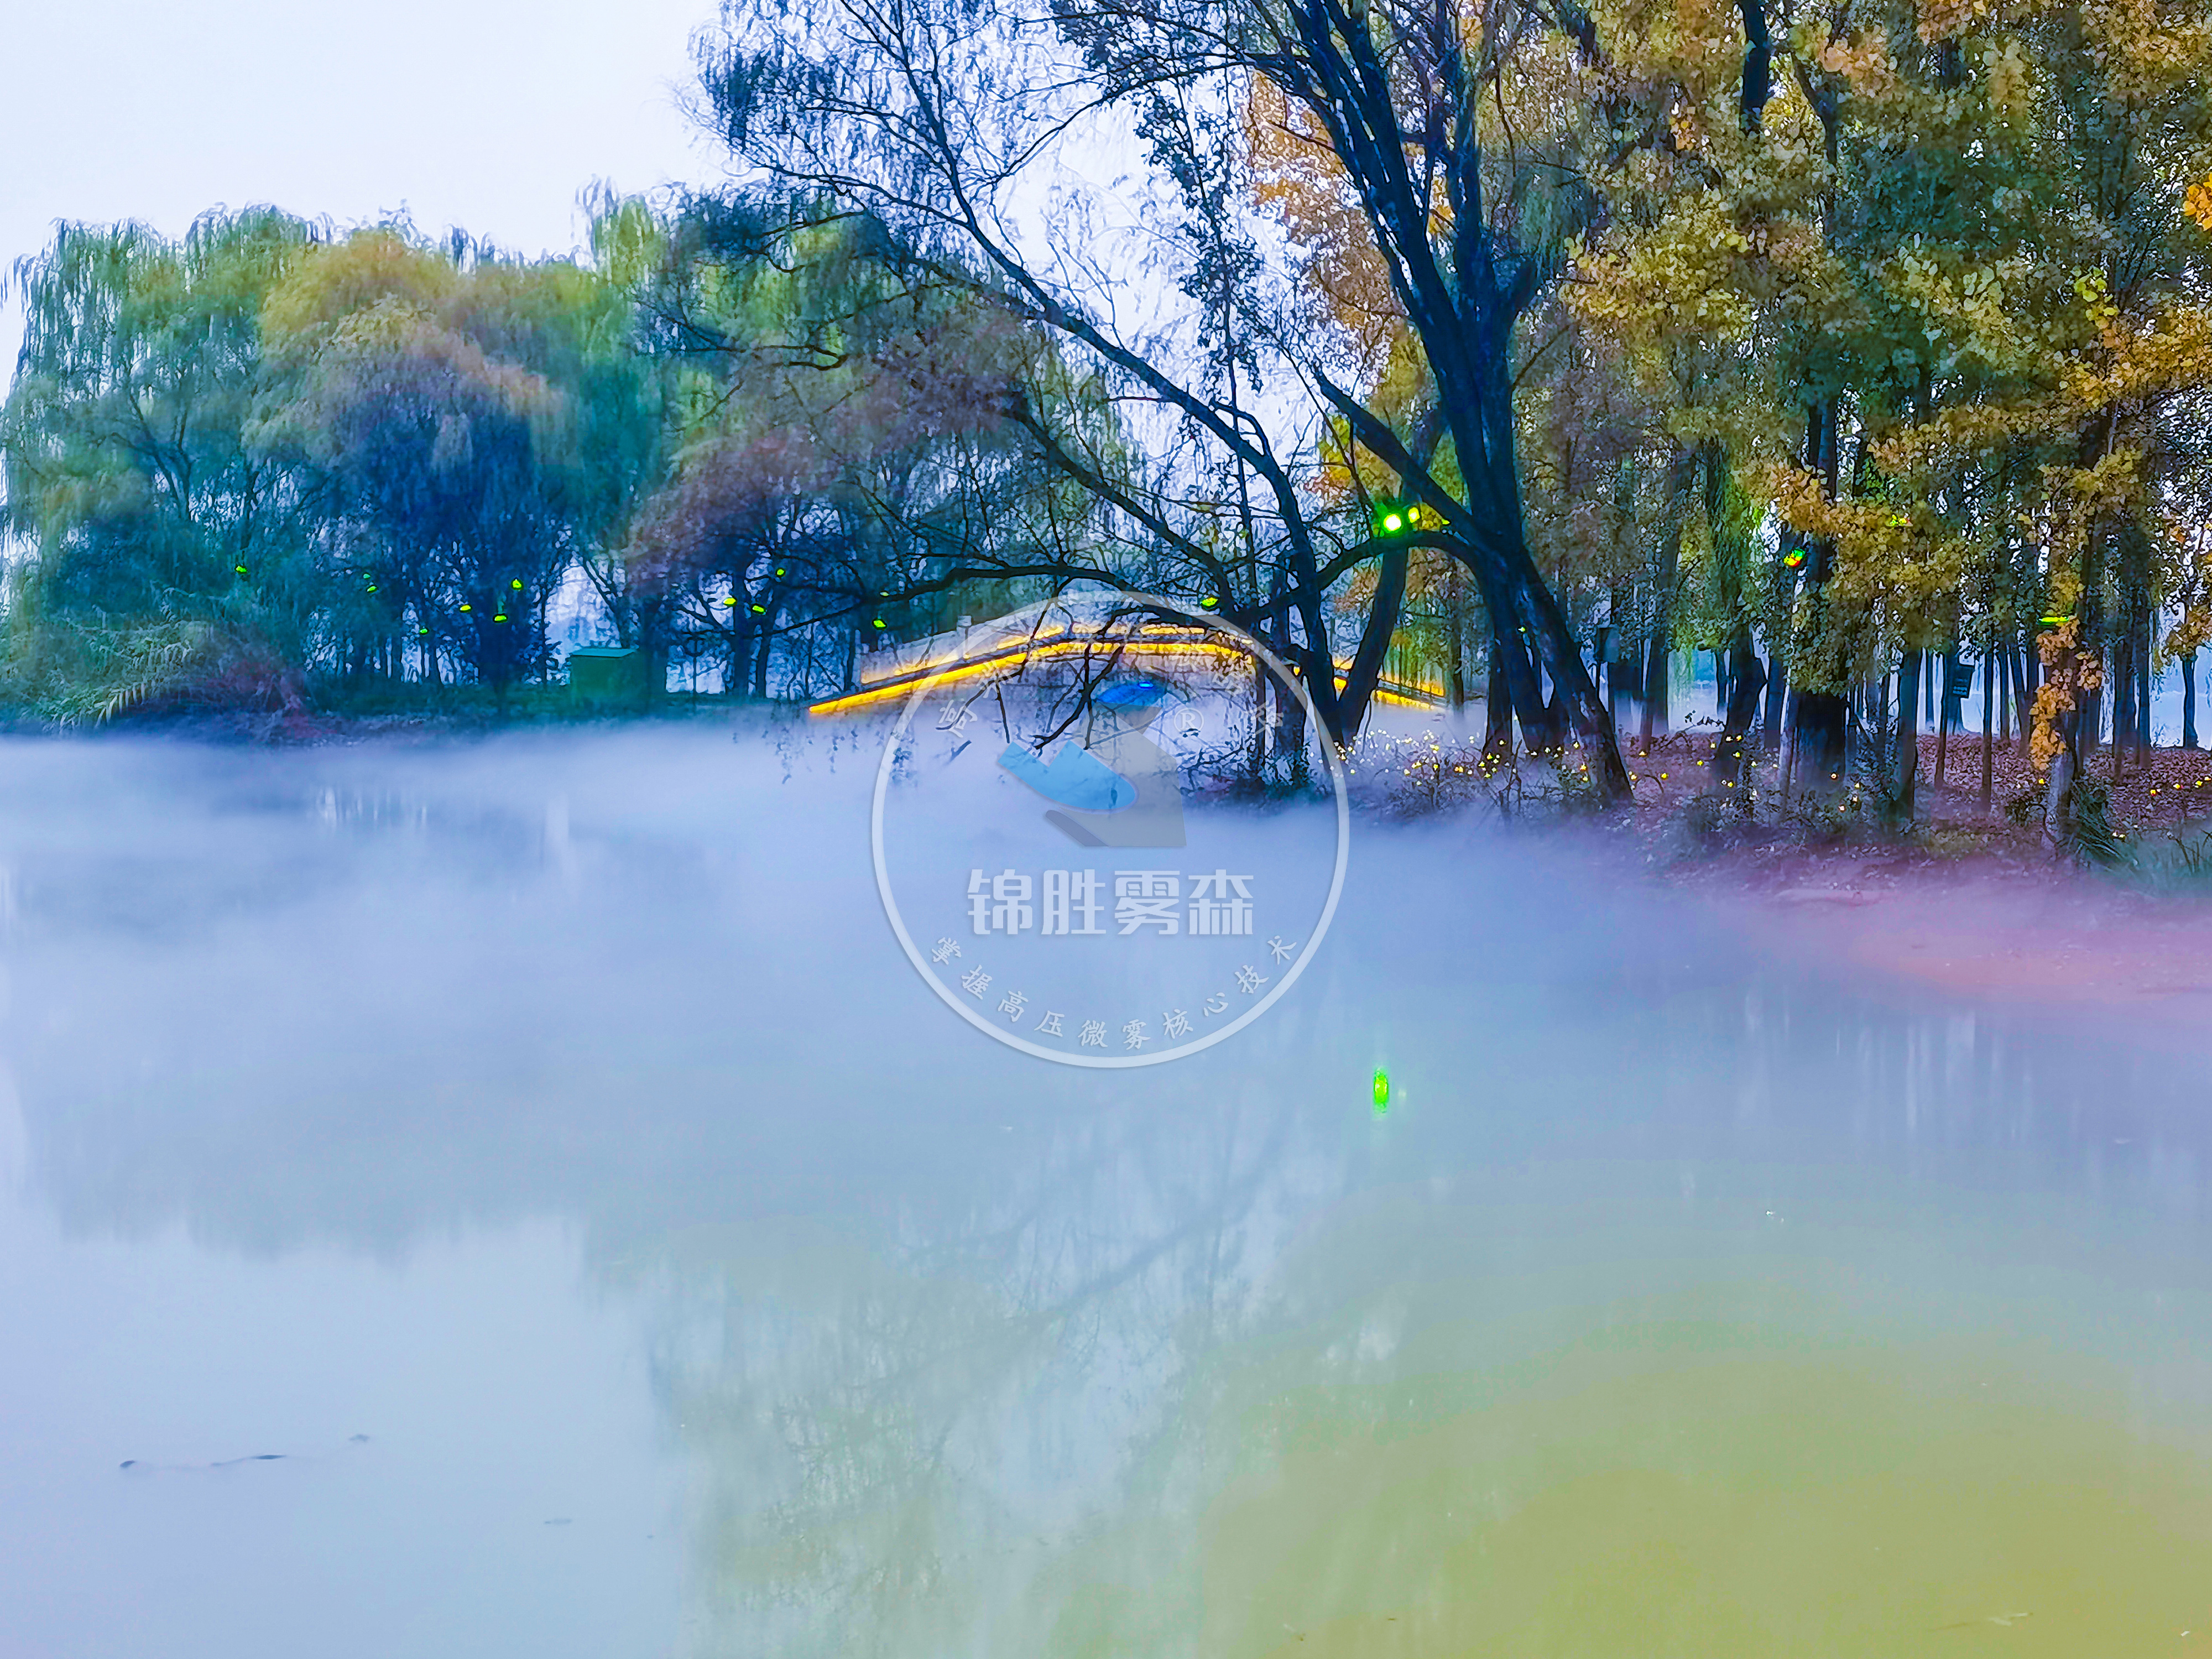 灞桥生态湿地公园人造雾景观 领略诗情画意的“网红”打卡地